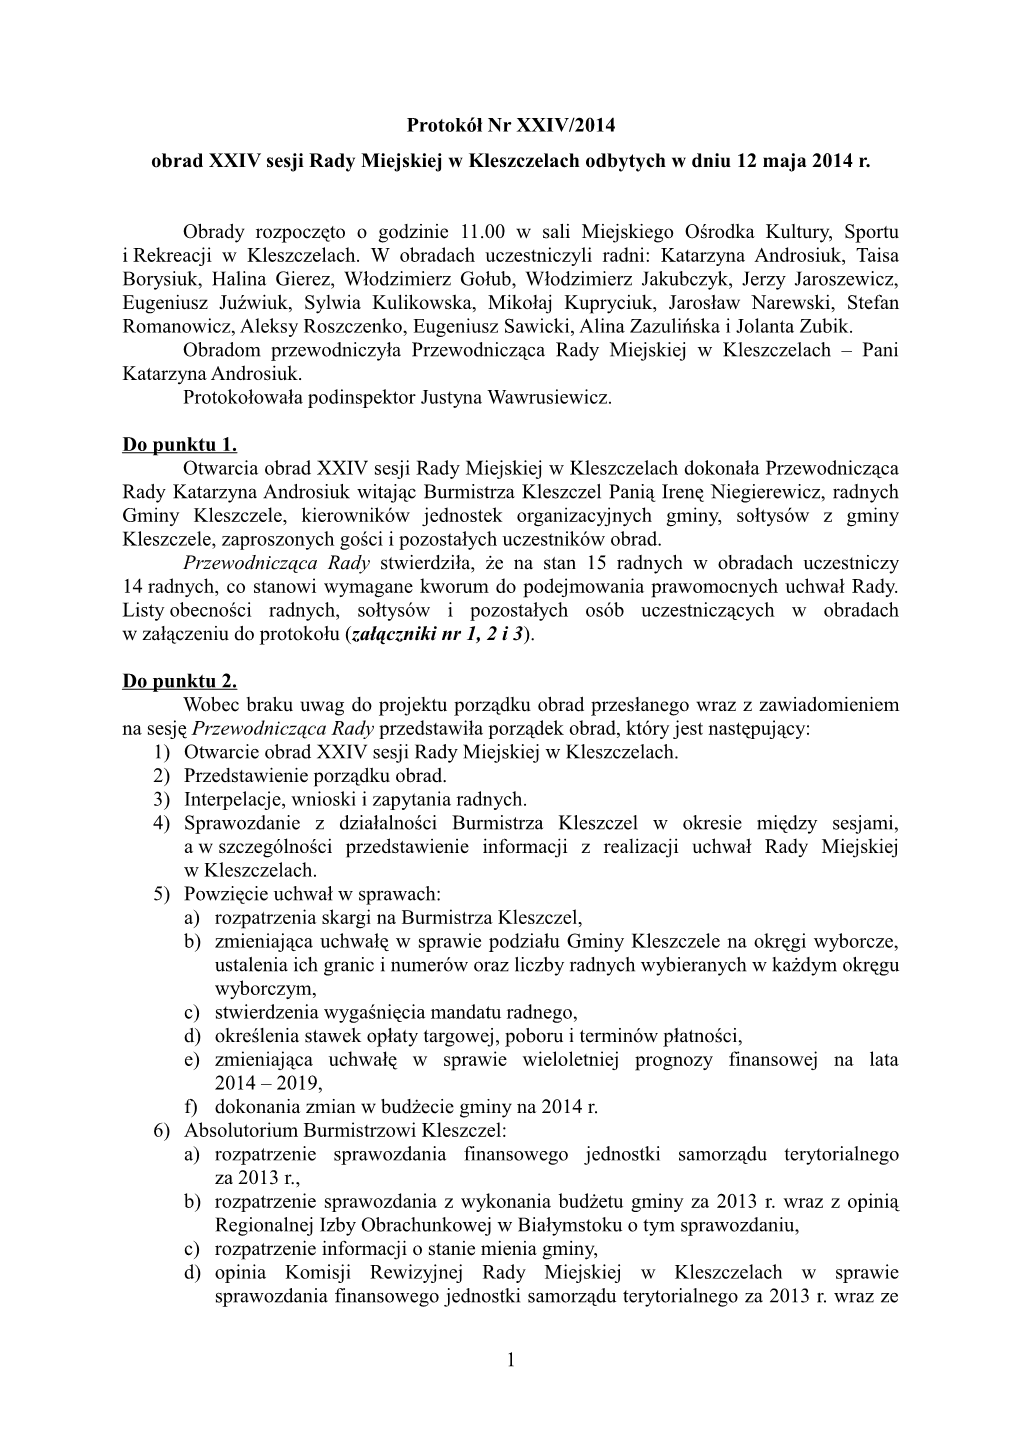 Protokół Nr XXIV/2014 Obrad XXIV Sesji Rady Miejskiej W Kleszczelach Odbytych W Dniu 12 Maja 2014 R